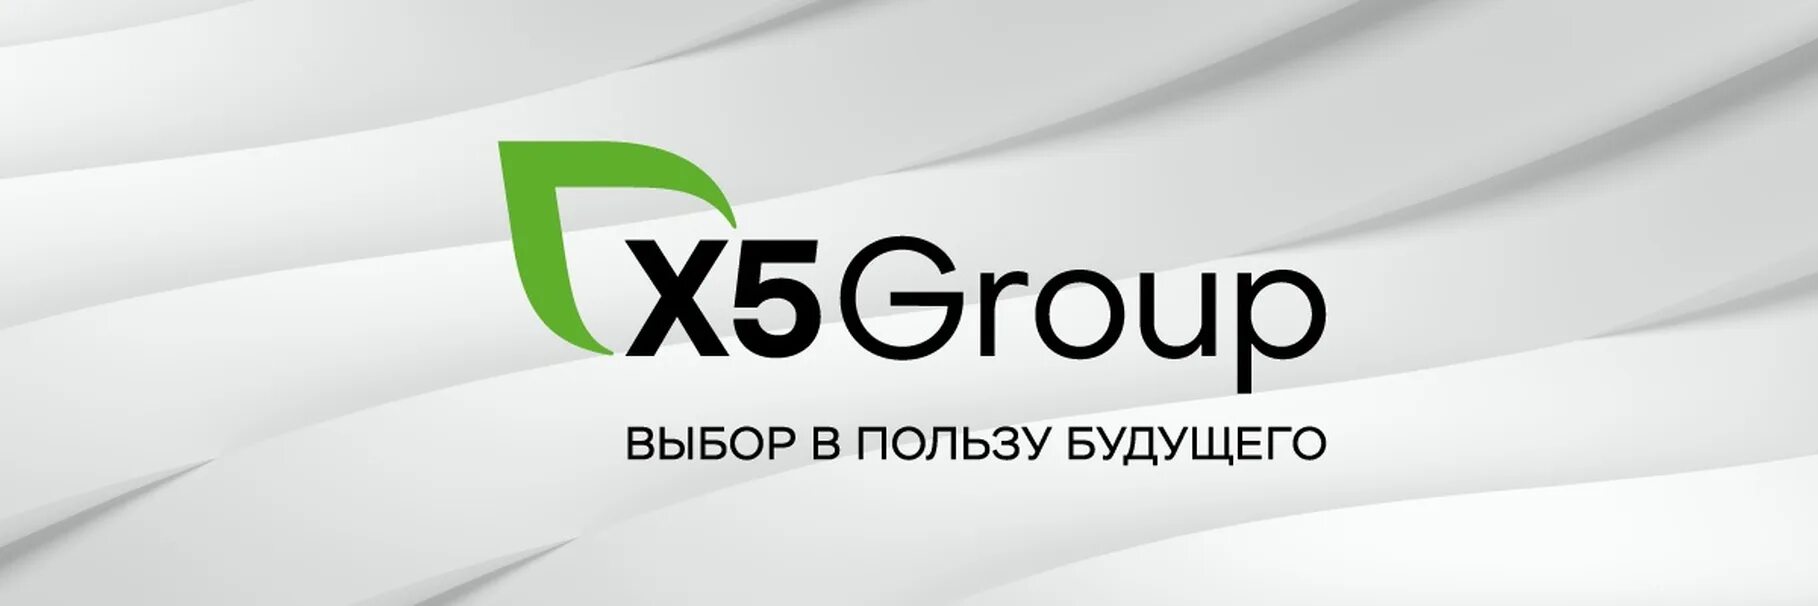 X5 group форум